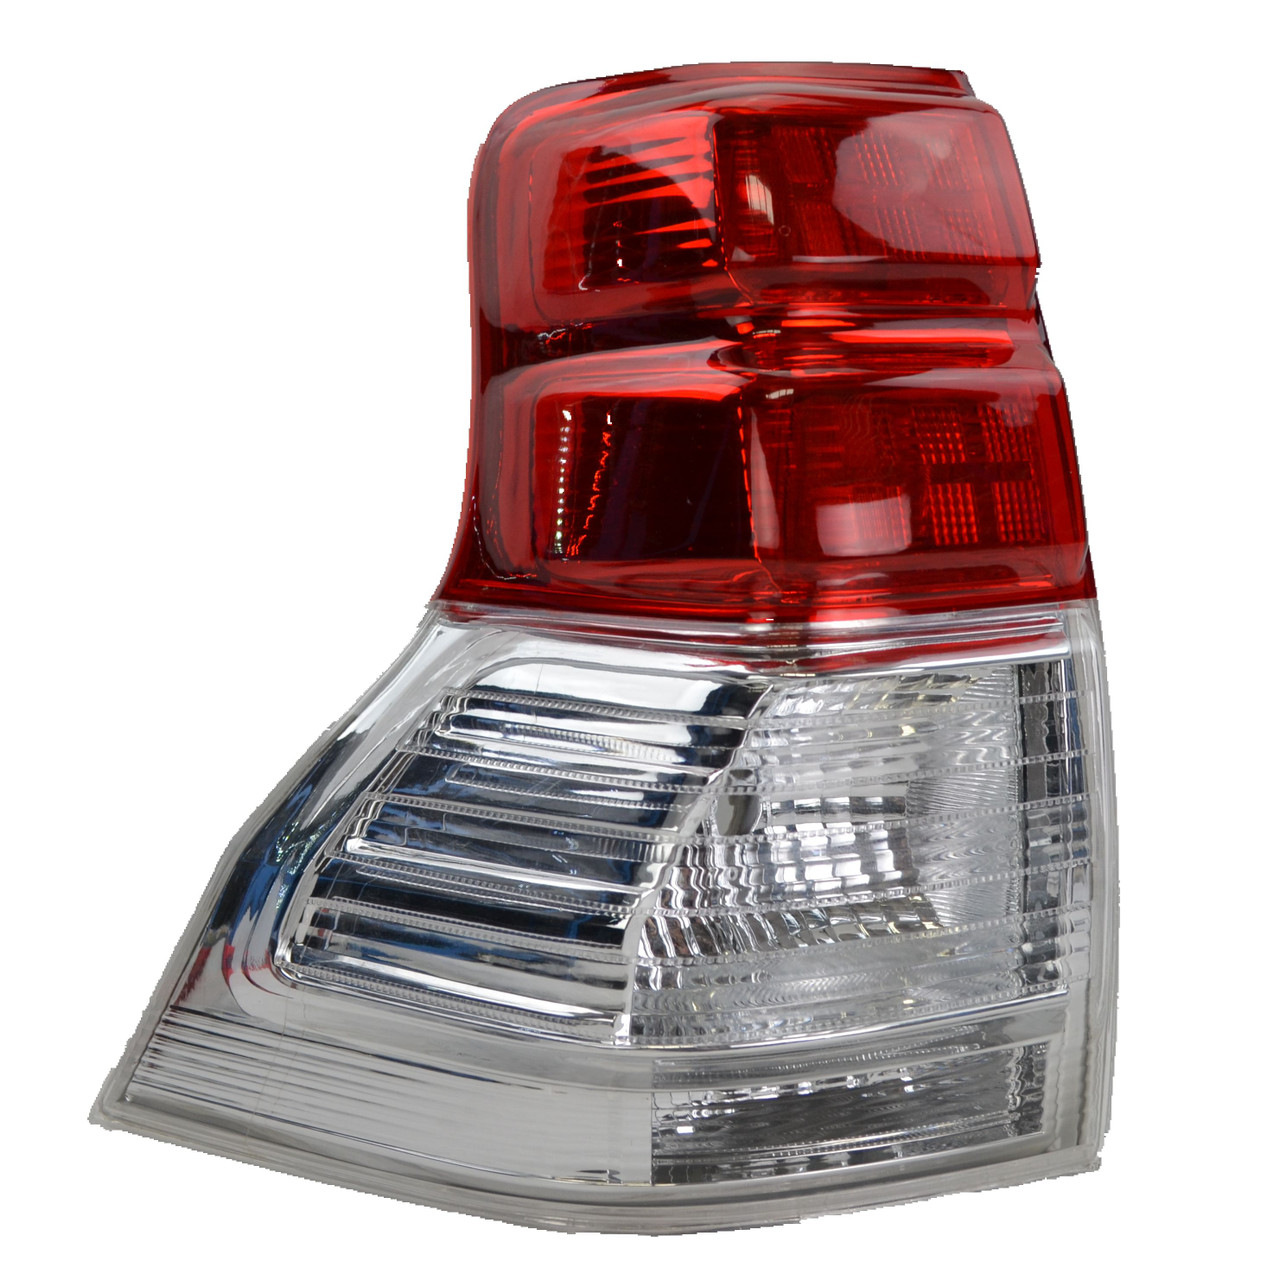 Tail light for Toyota Landcruiser Prado 150 08/09-08/13 New Left Rear Lamp 10 11 12